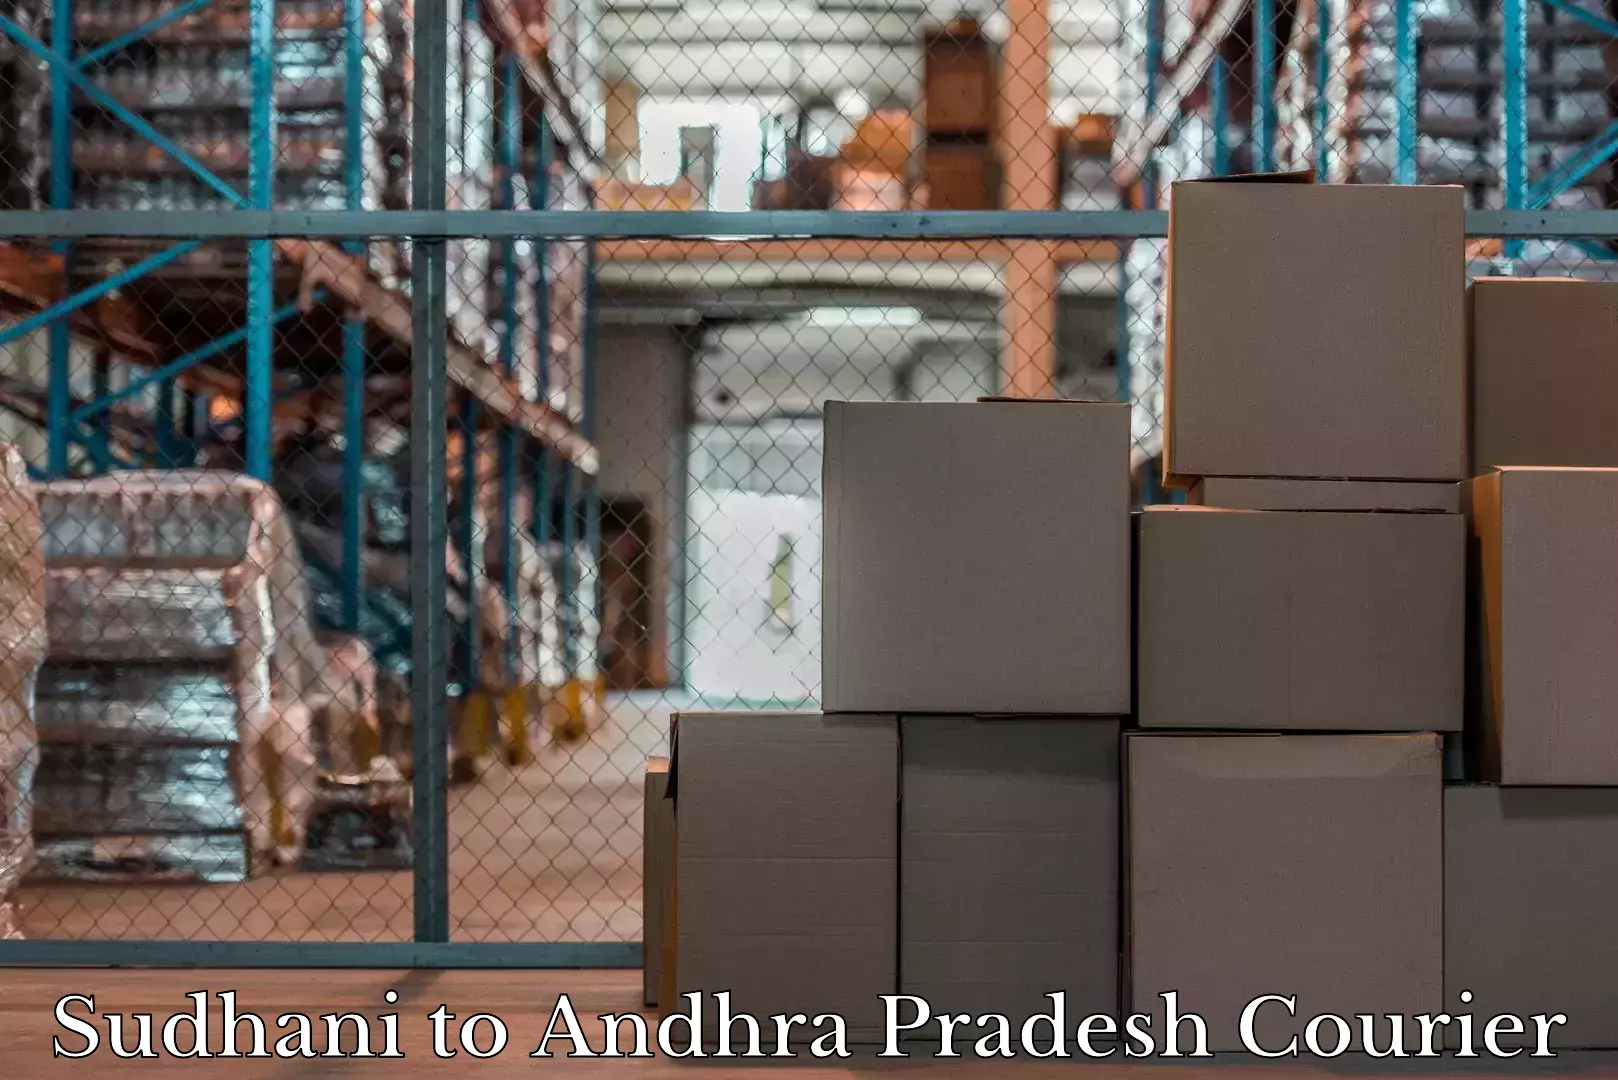 Luggage delivery network Sudhani to Veldurthi